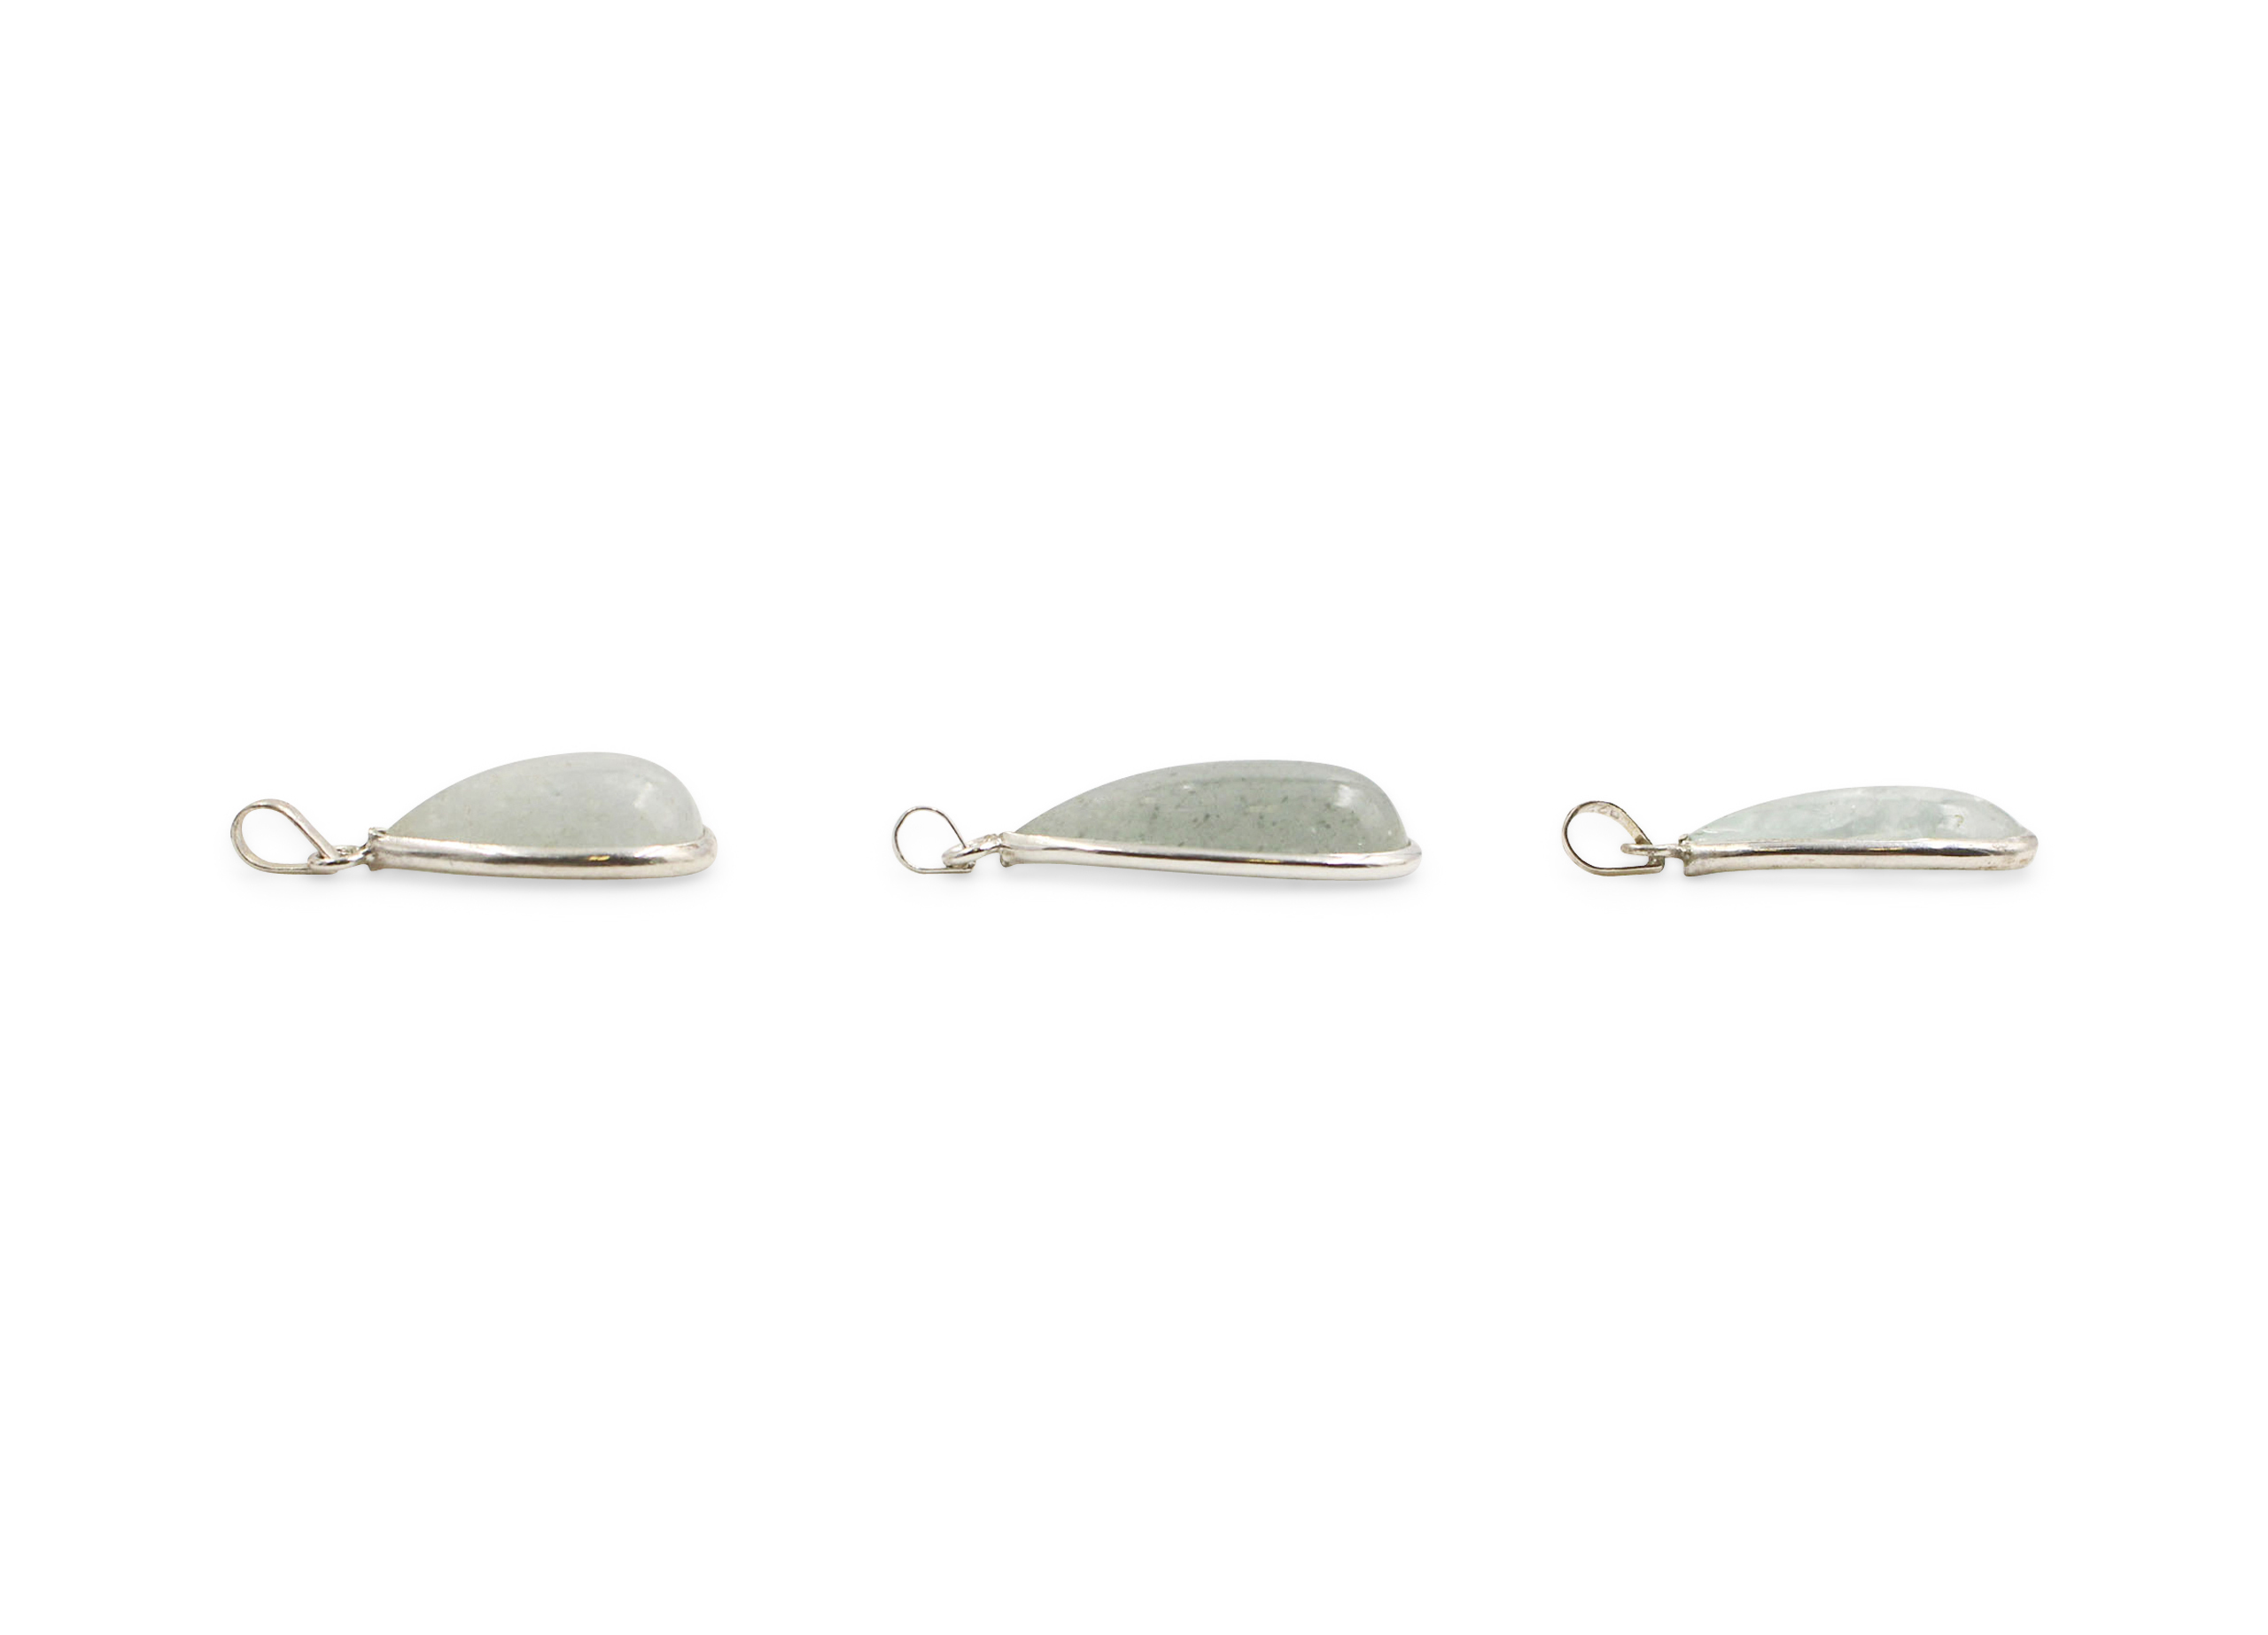 Aquamarine "Drop" Cabochon Sterling Silver Pendant - Crystal Dreams